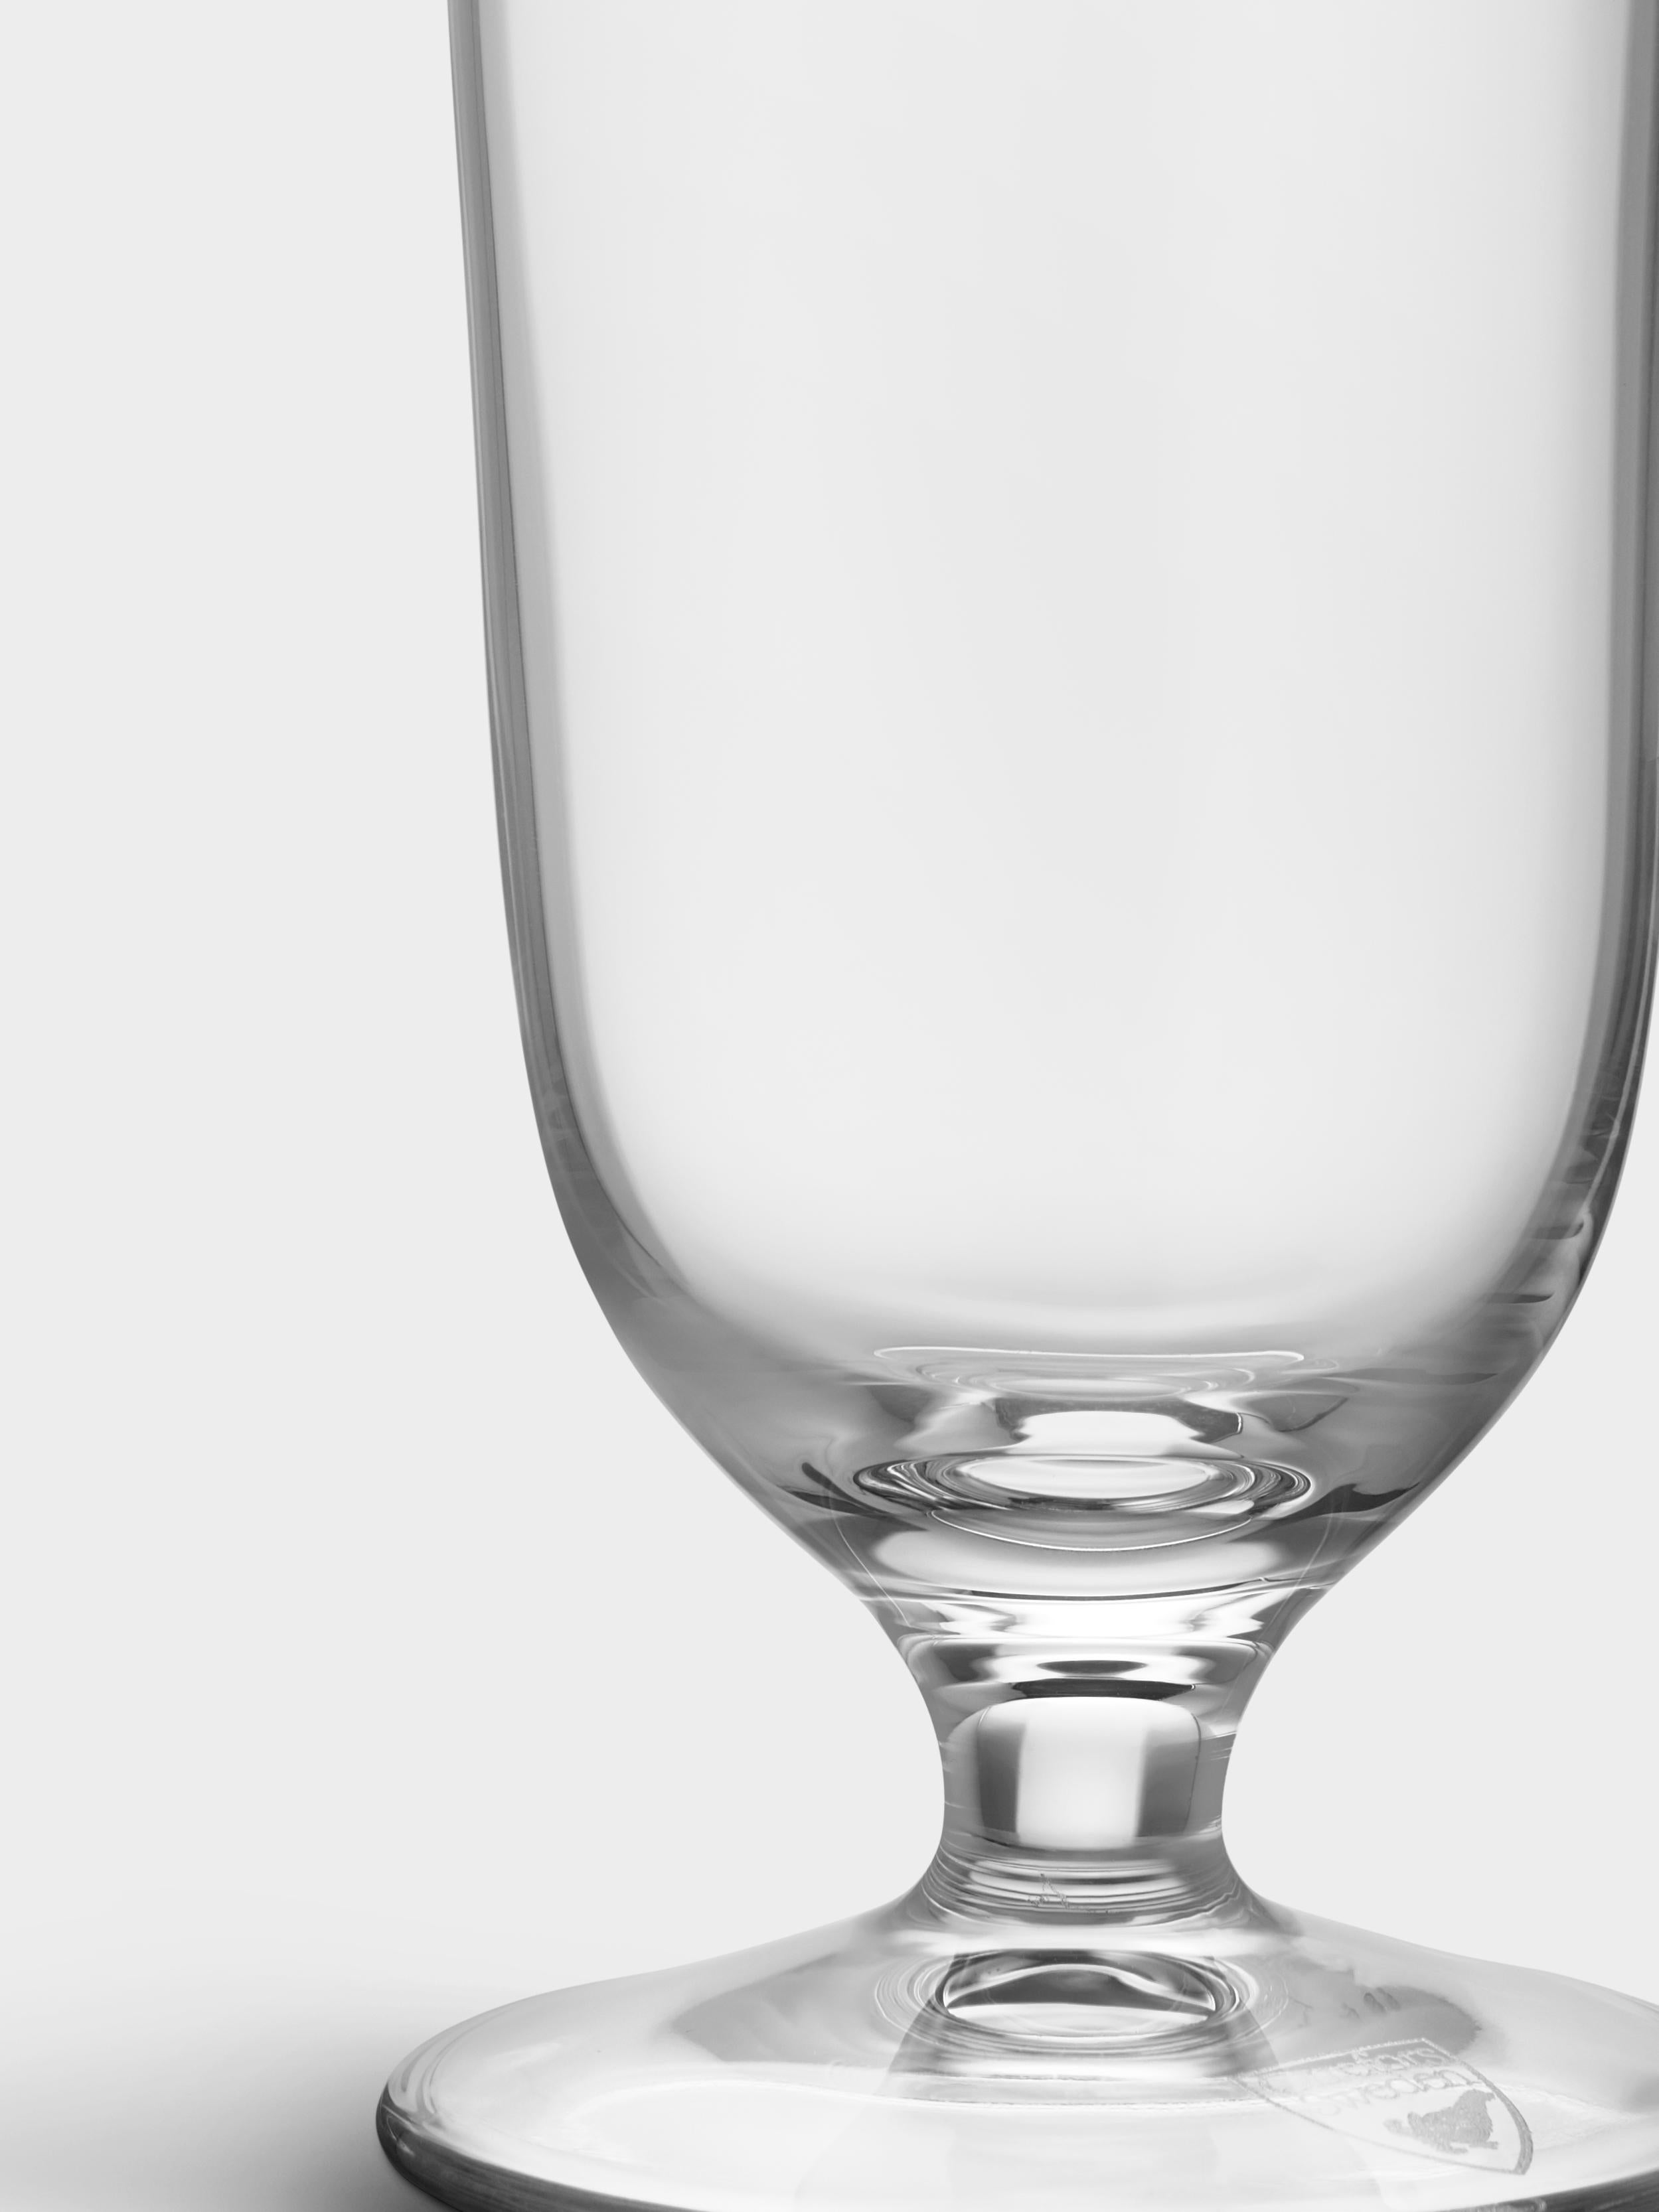 Beer Pilsner von Orrefors fasst 15,5 oz und ist ein hohes, gerades Bierglas, das die Bitterkeit des Pilsners elegant zur Geltung bringt. Ein leichtes, hopfenbetontes Pilsener kommt in diesem hohen Glas besonders gut zur Geltung. Durch seine